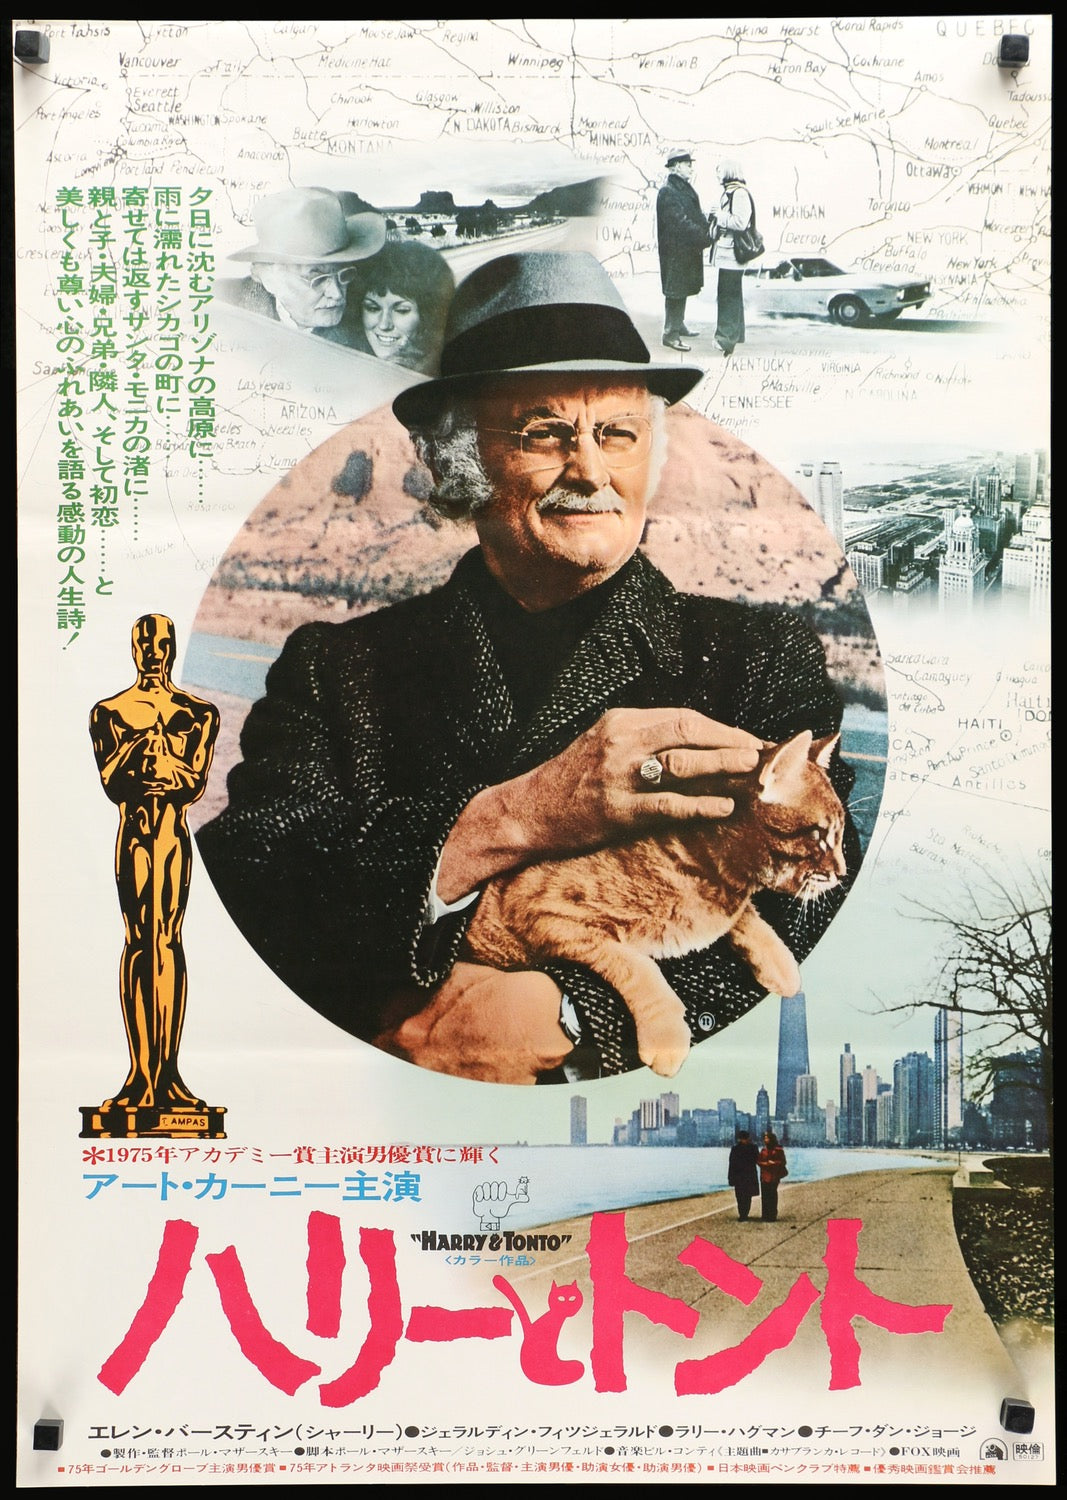 Harry and Tonto (1974) original movie poster for sale at Original Film Art